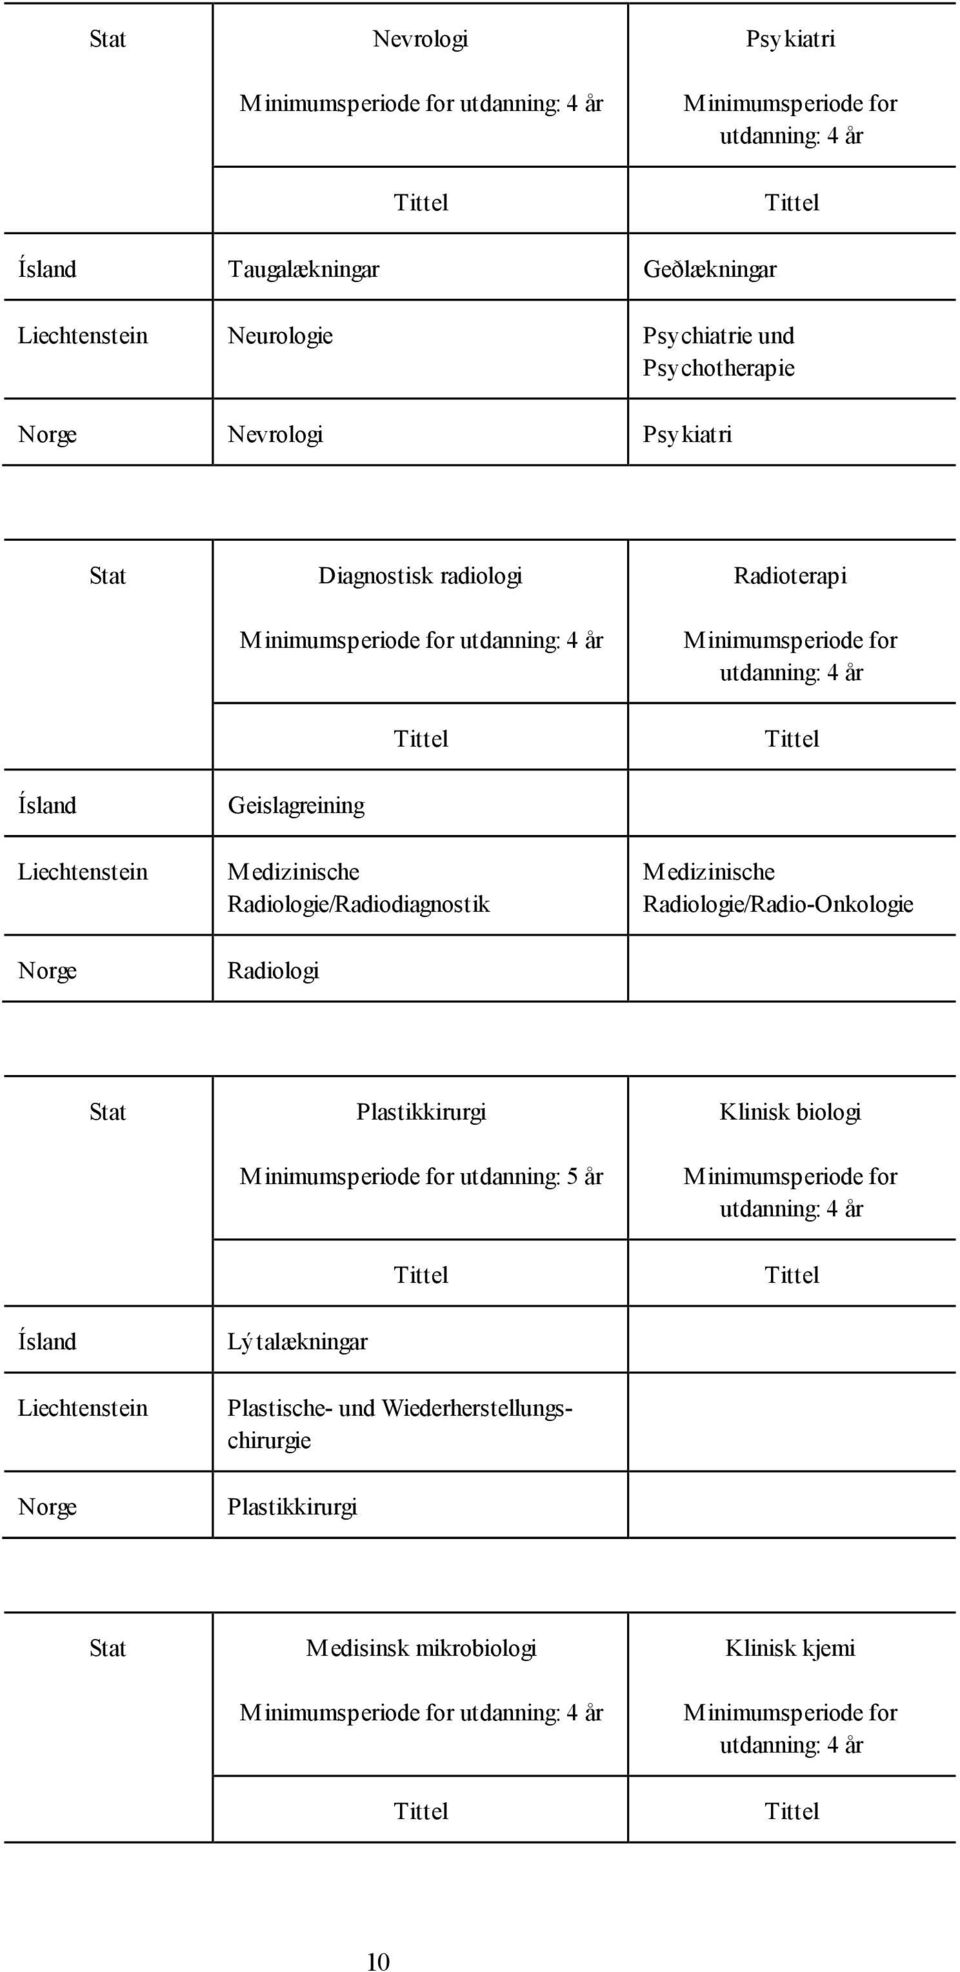 Radiologi Medizinische Radiologie/Radio-Onkologie Plastikkirurgi utdanning: 5 år Lýtalækningar